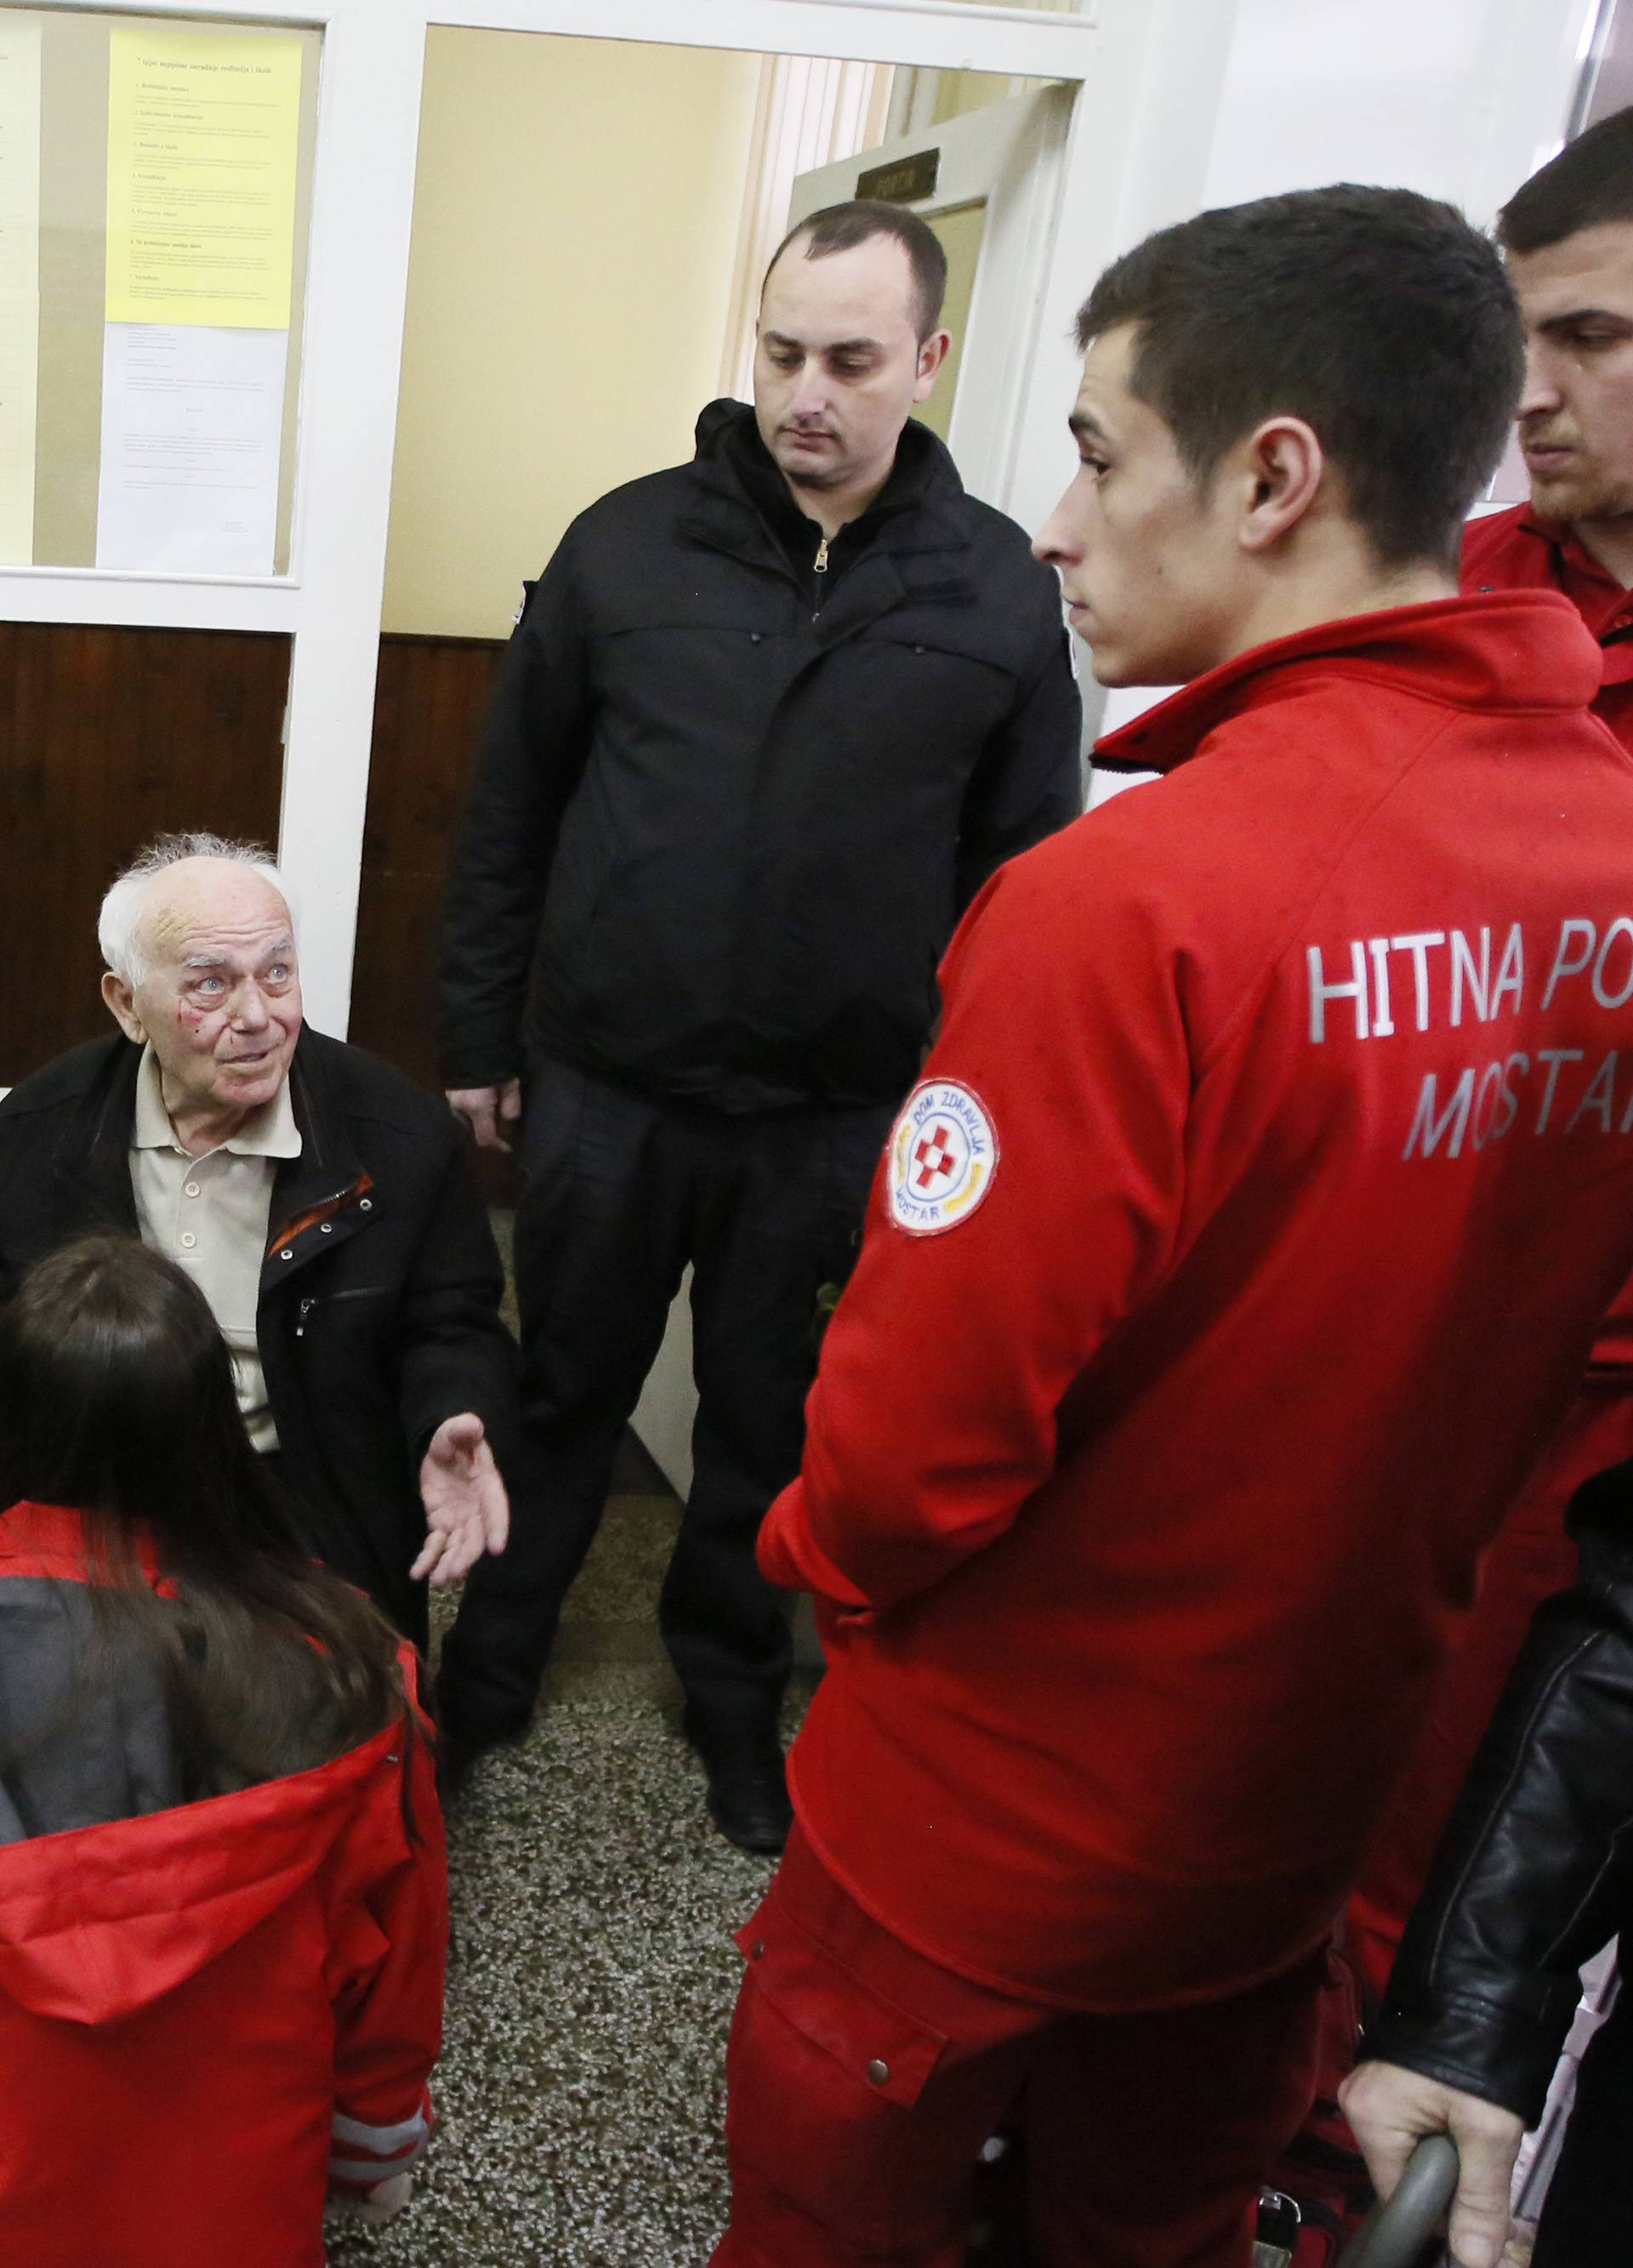 Mostar: Pri ulasku na biračko mjesto stariji gospodin se poskliznuo te je reagirala Hitna